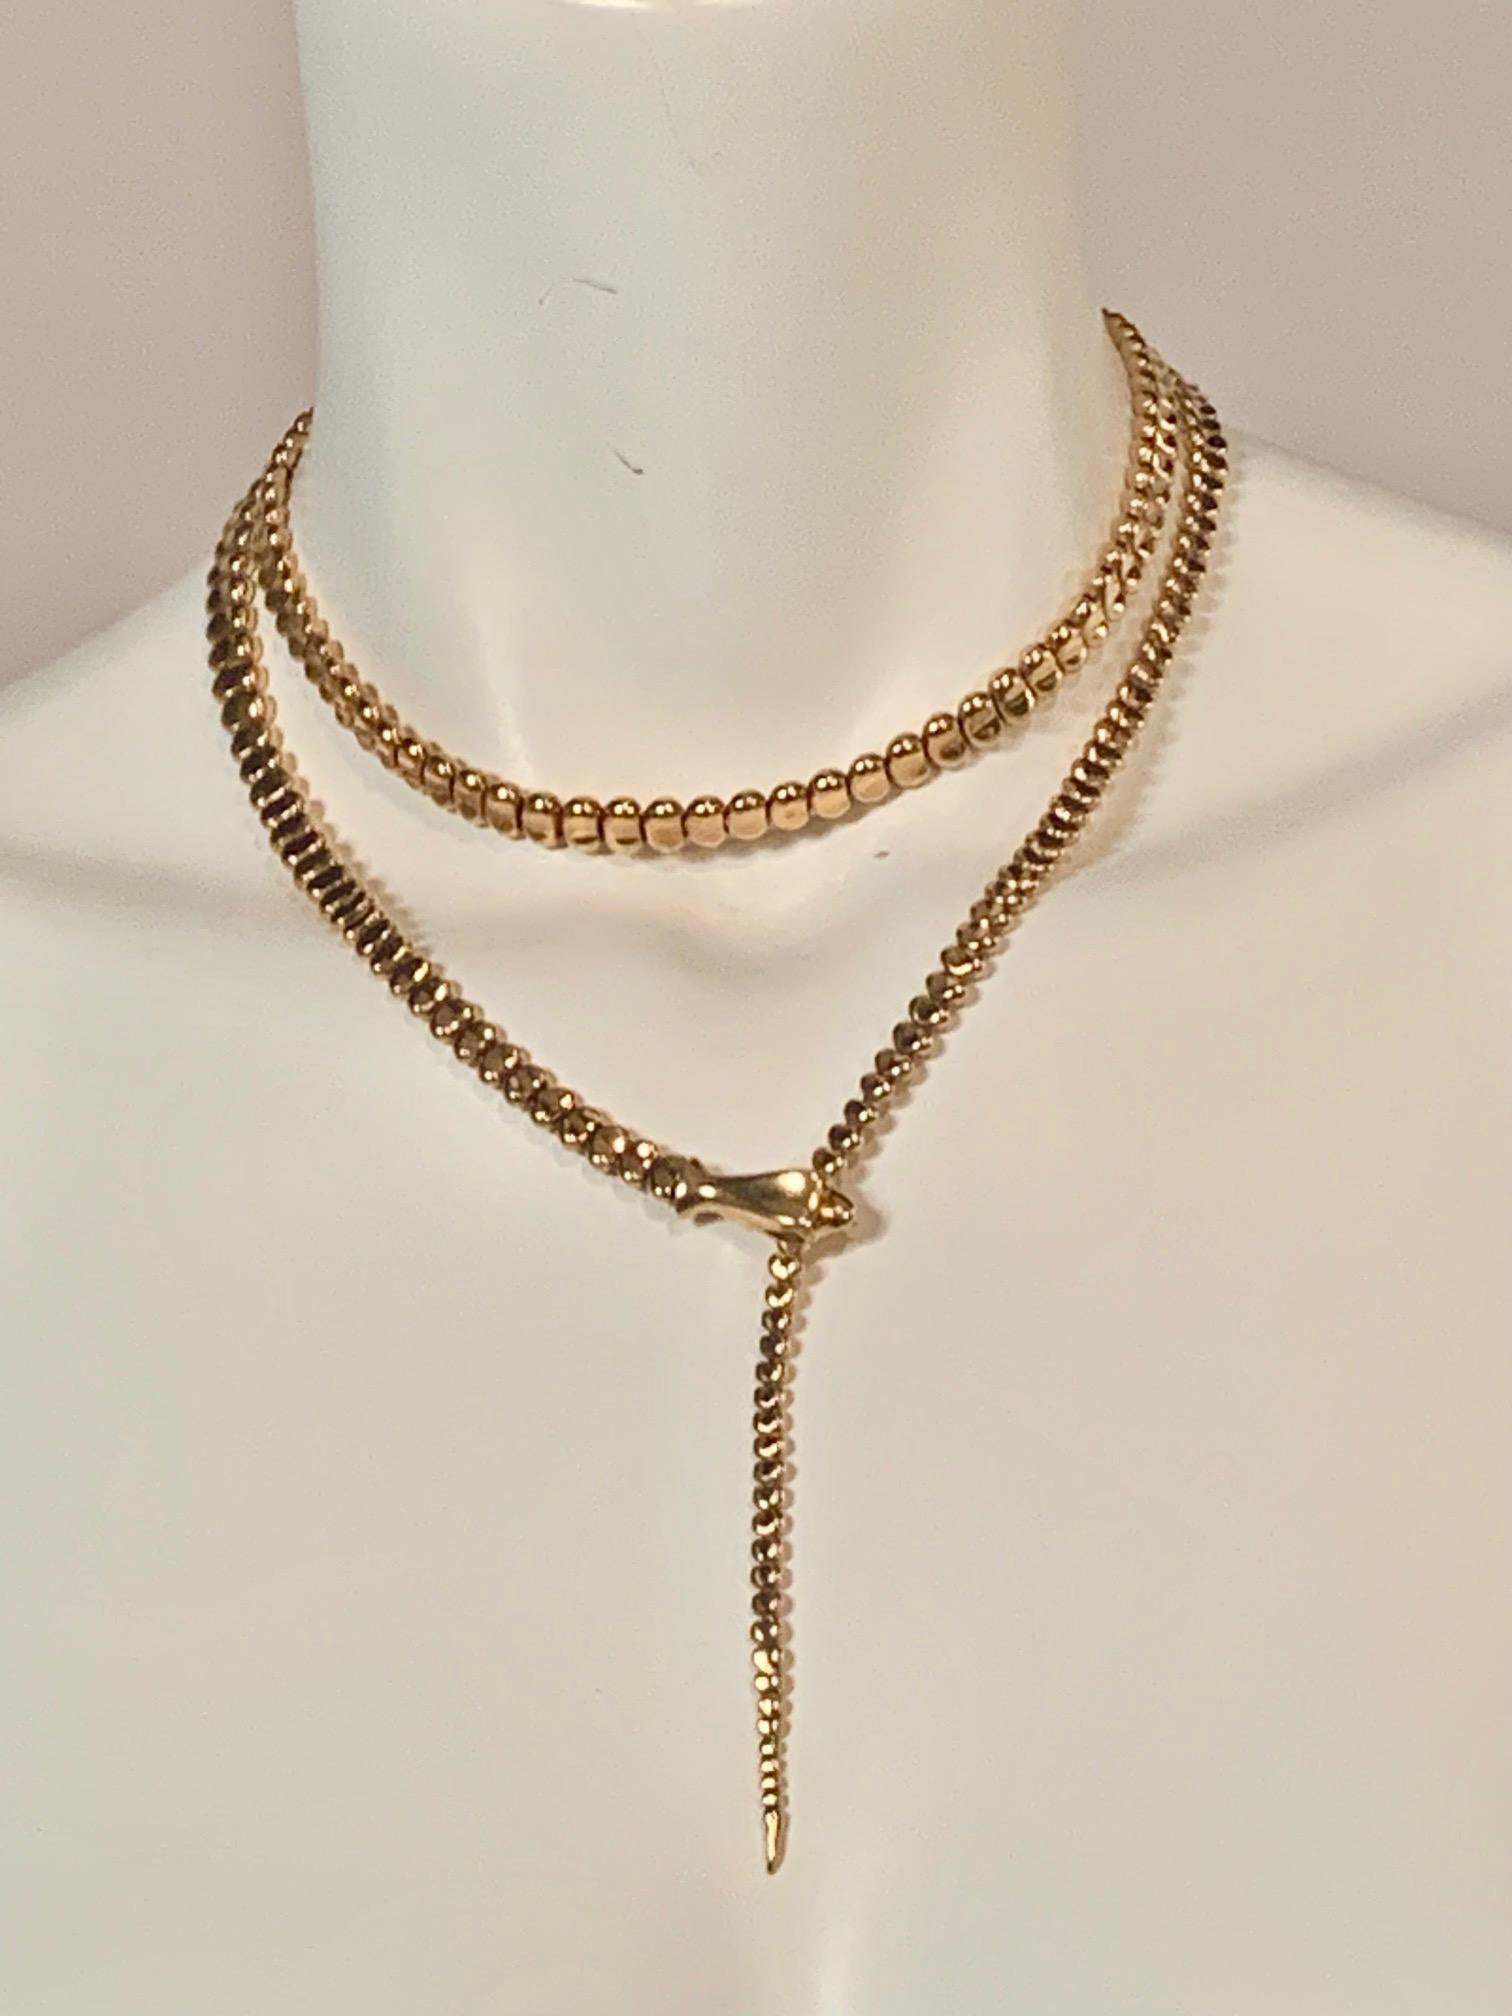 Artist Vintage Elsa Peretti Gold Snake Belt, Necklace or Bracelet 36 inches long